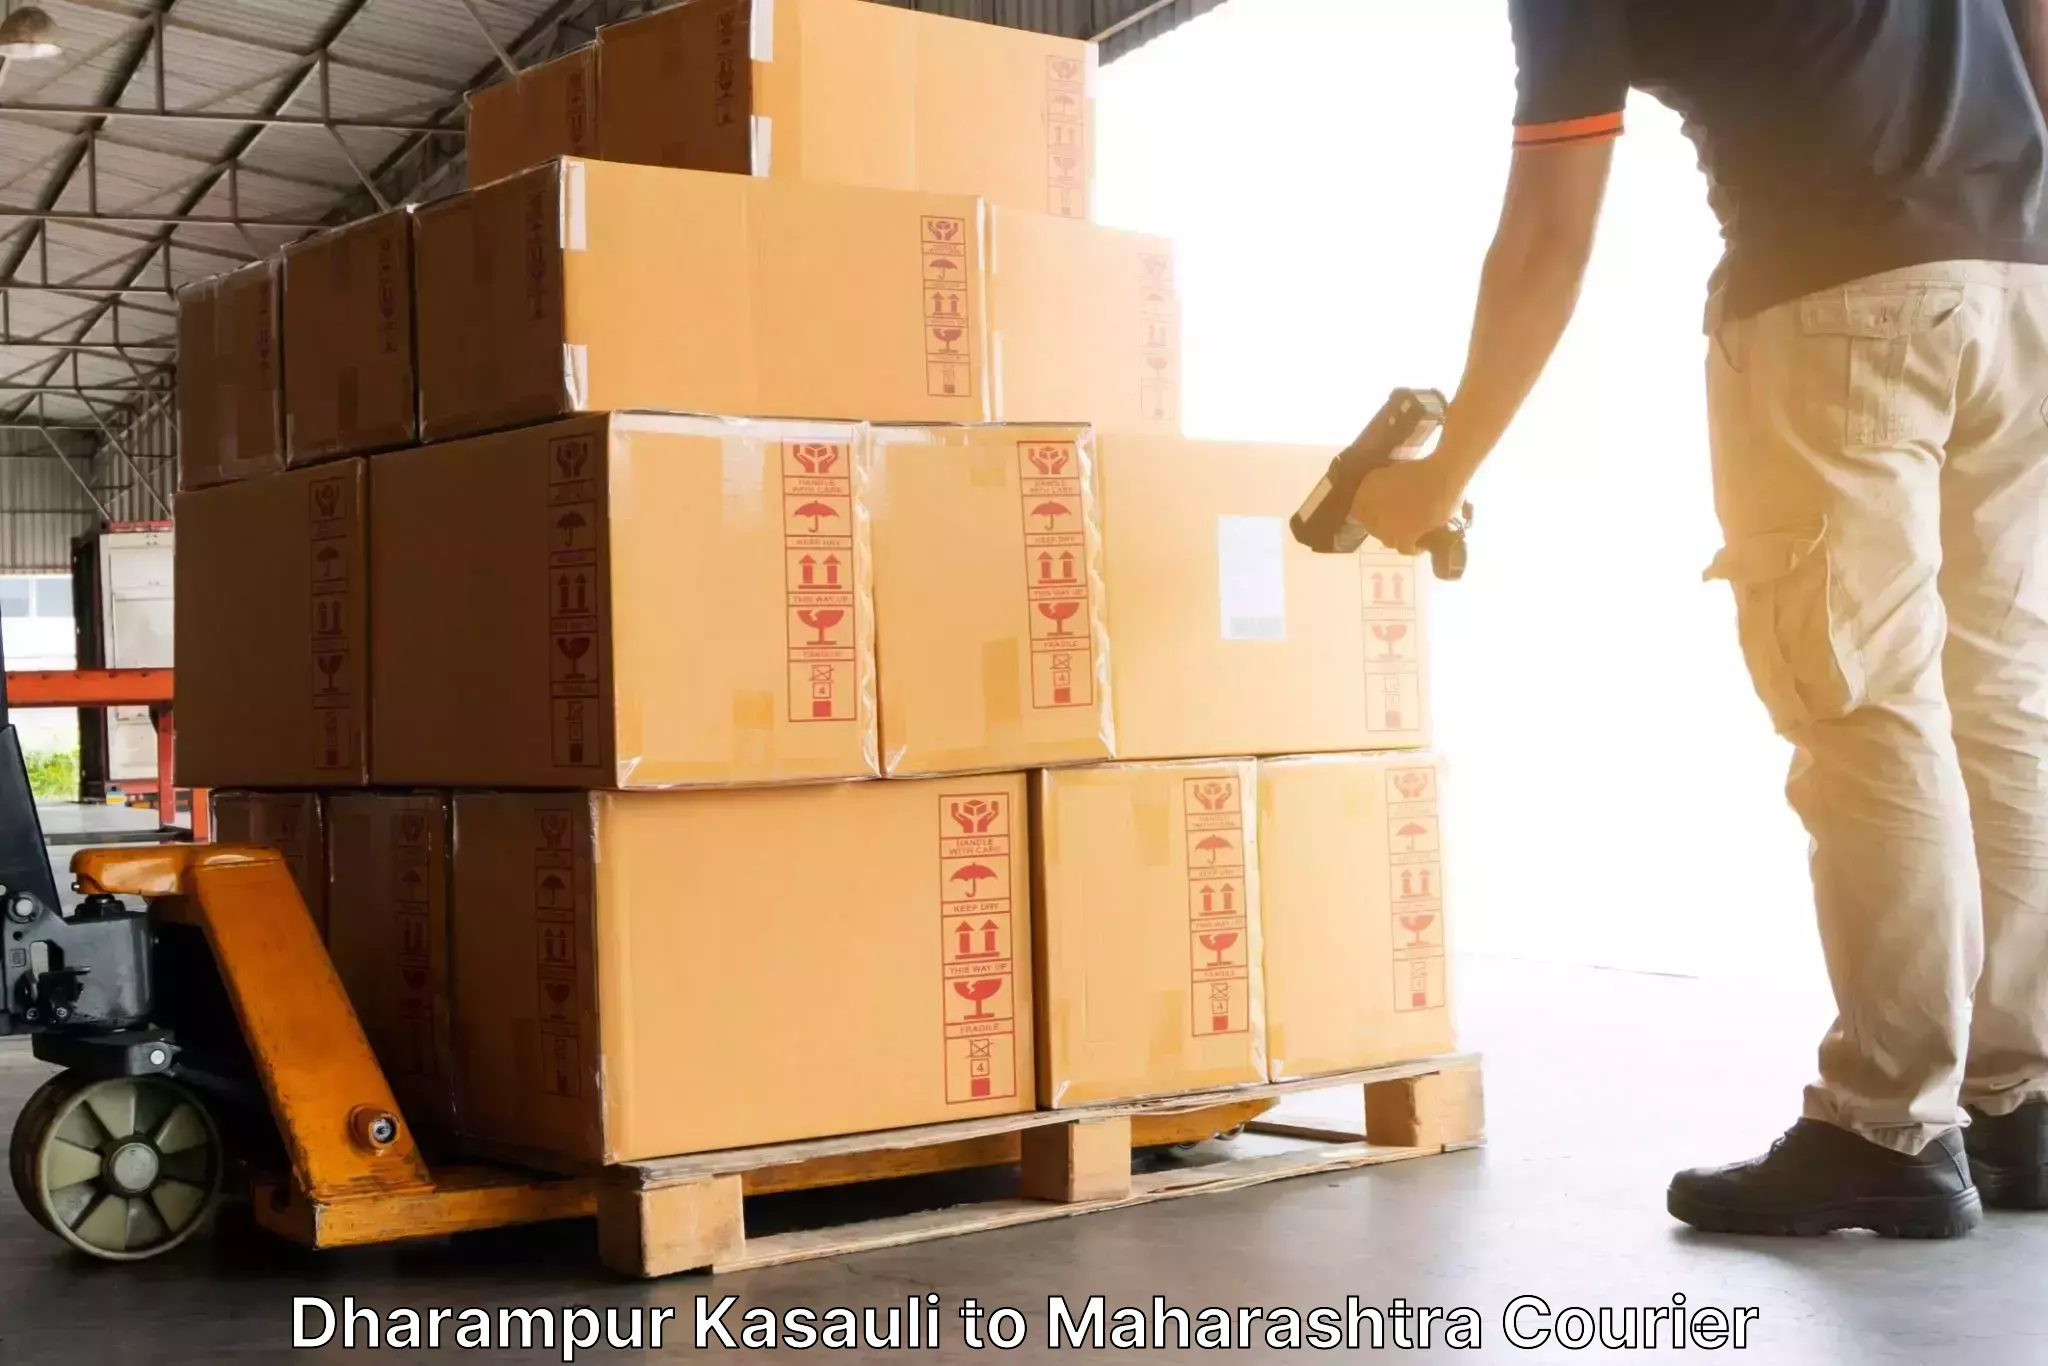 Express package handling Dharampur Kasauli to Oras